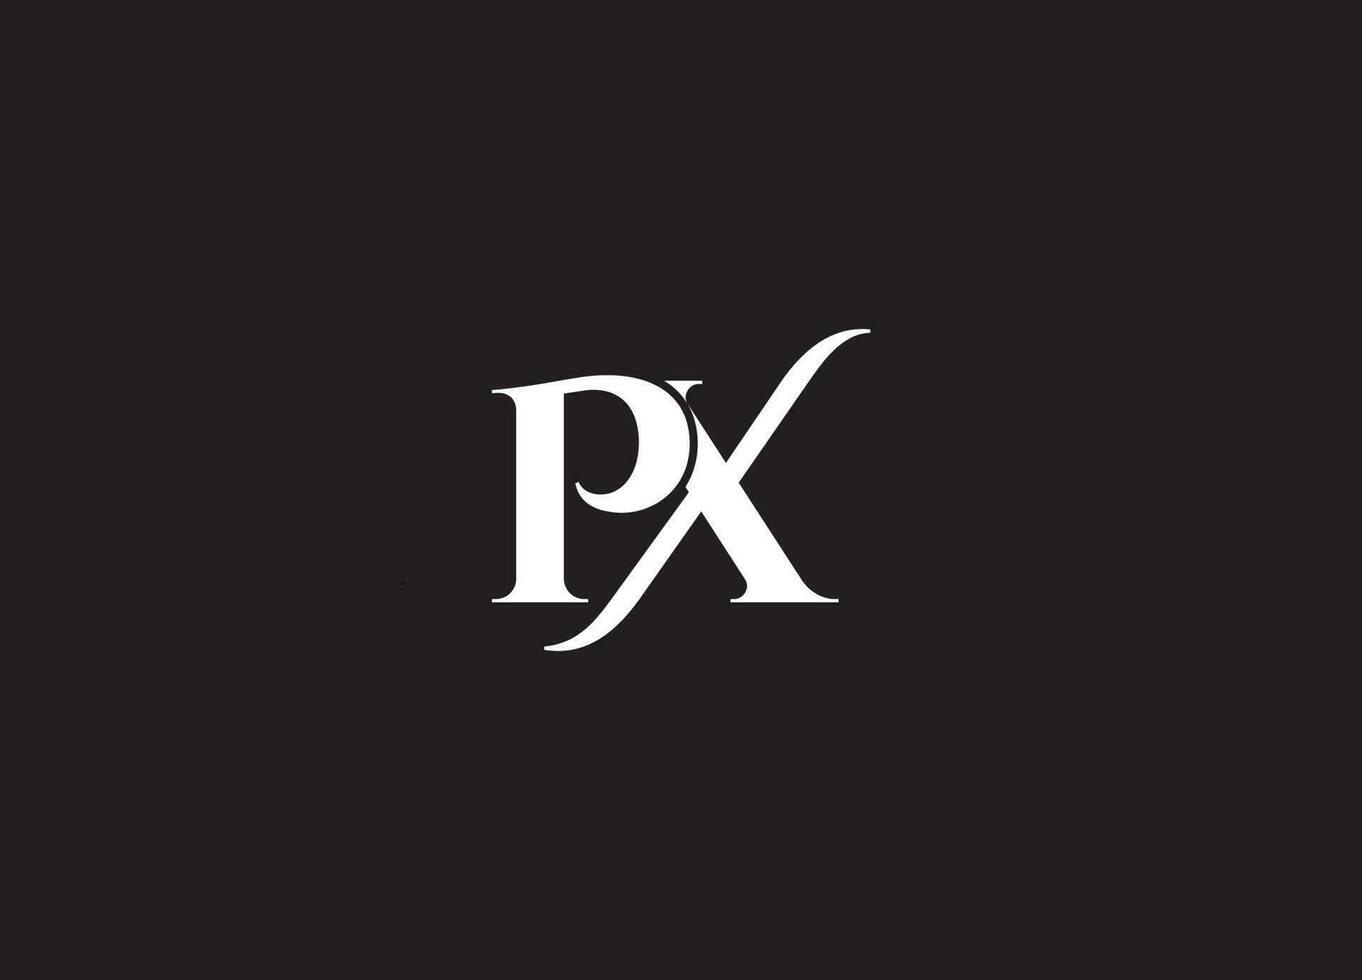 PX logo design and company logo vector